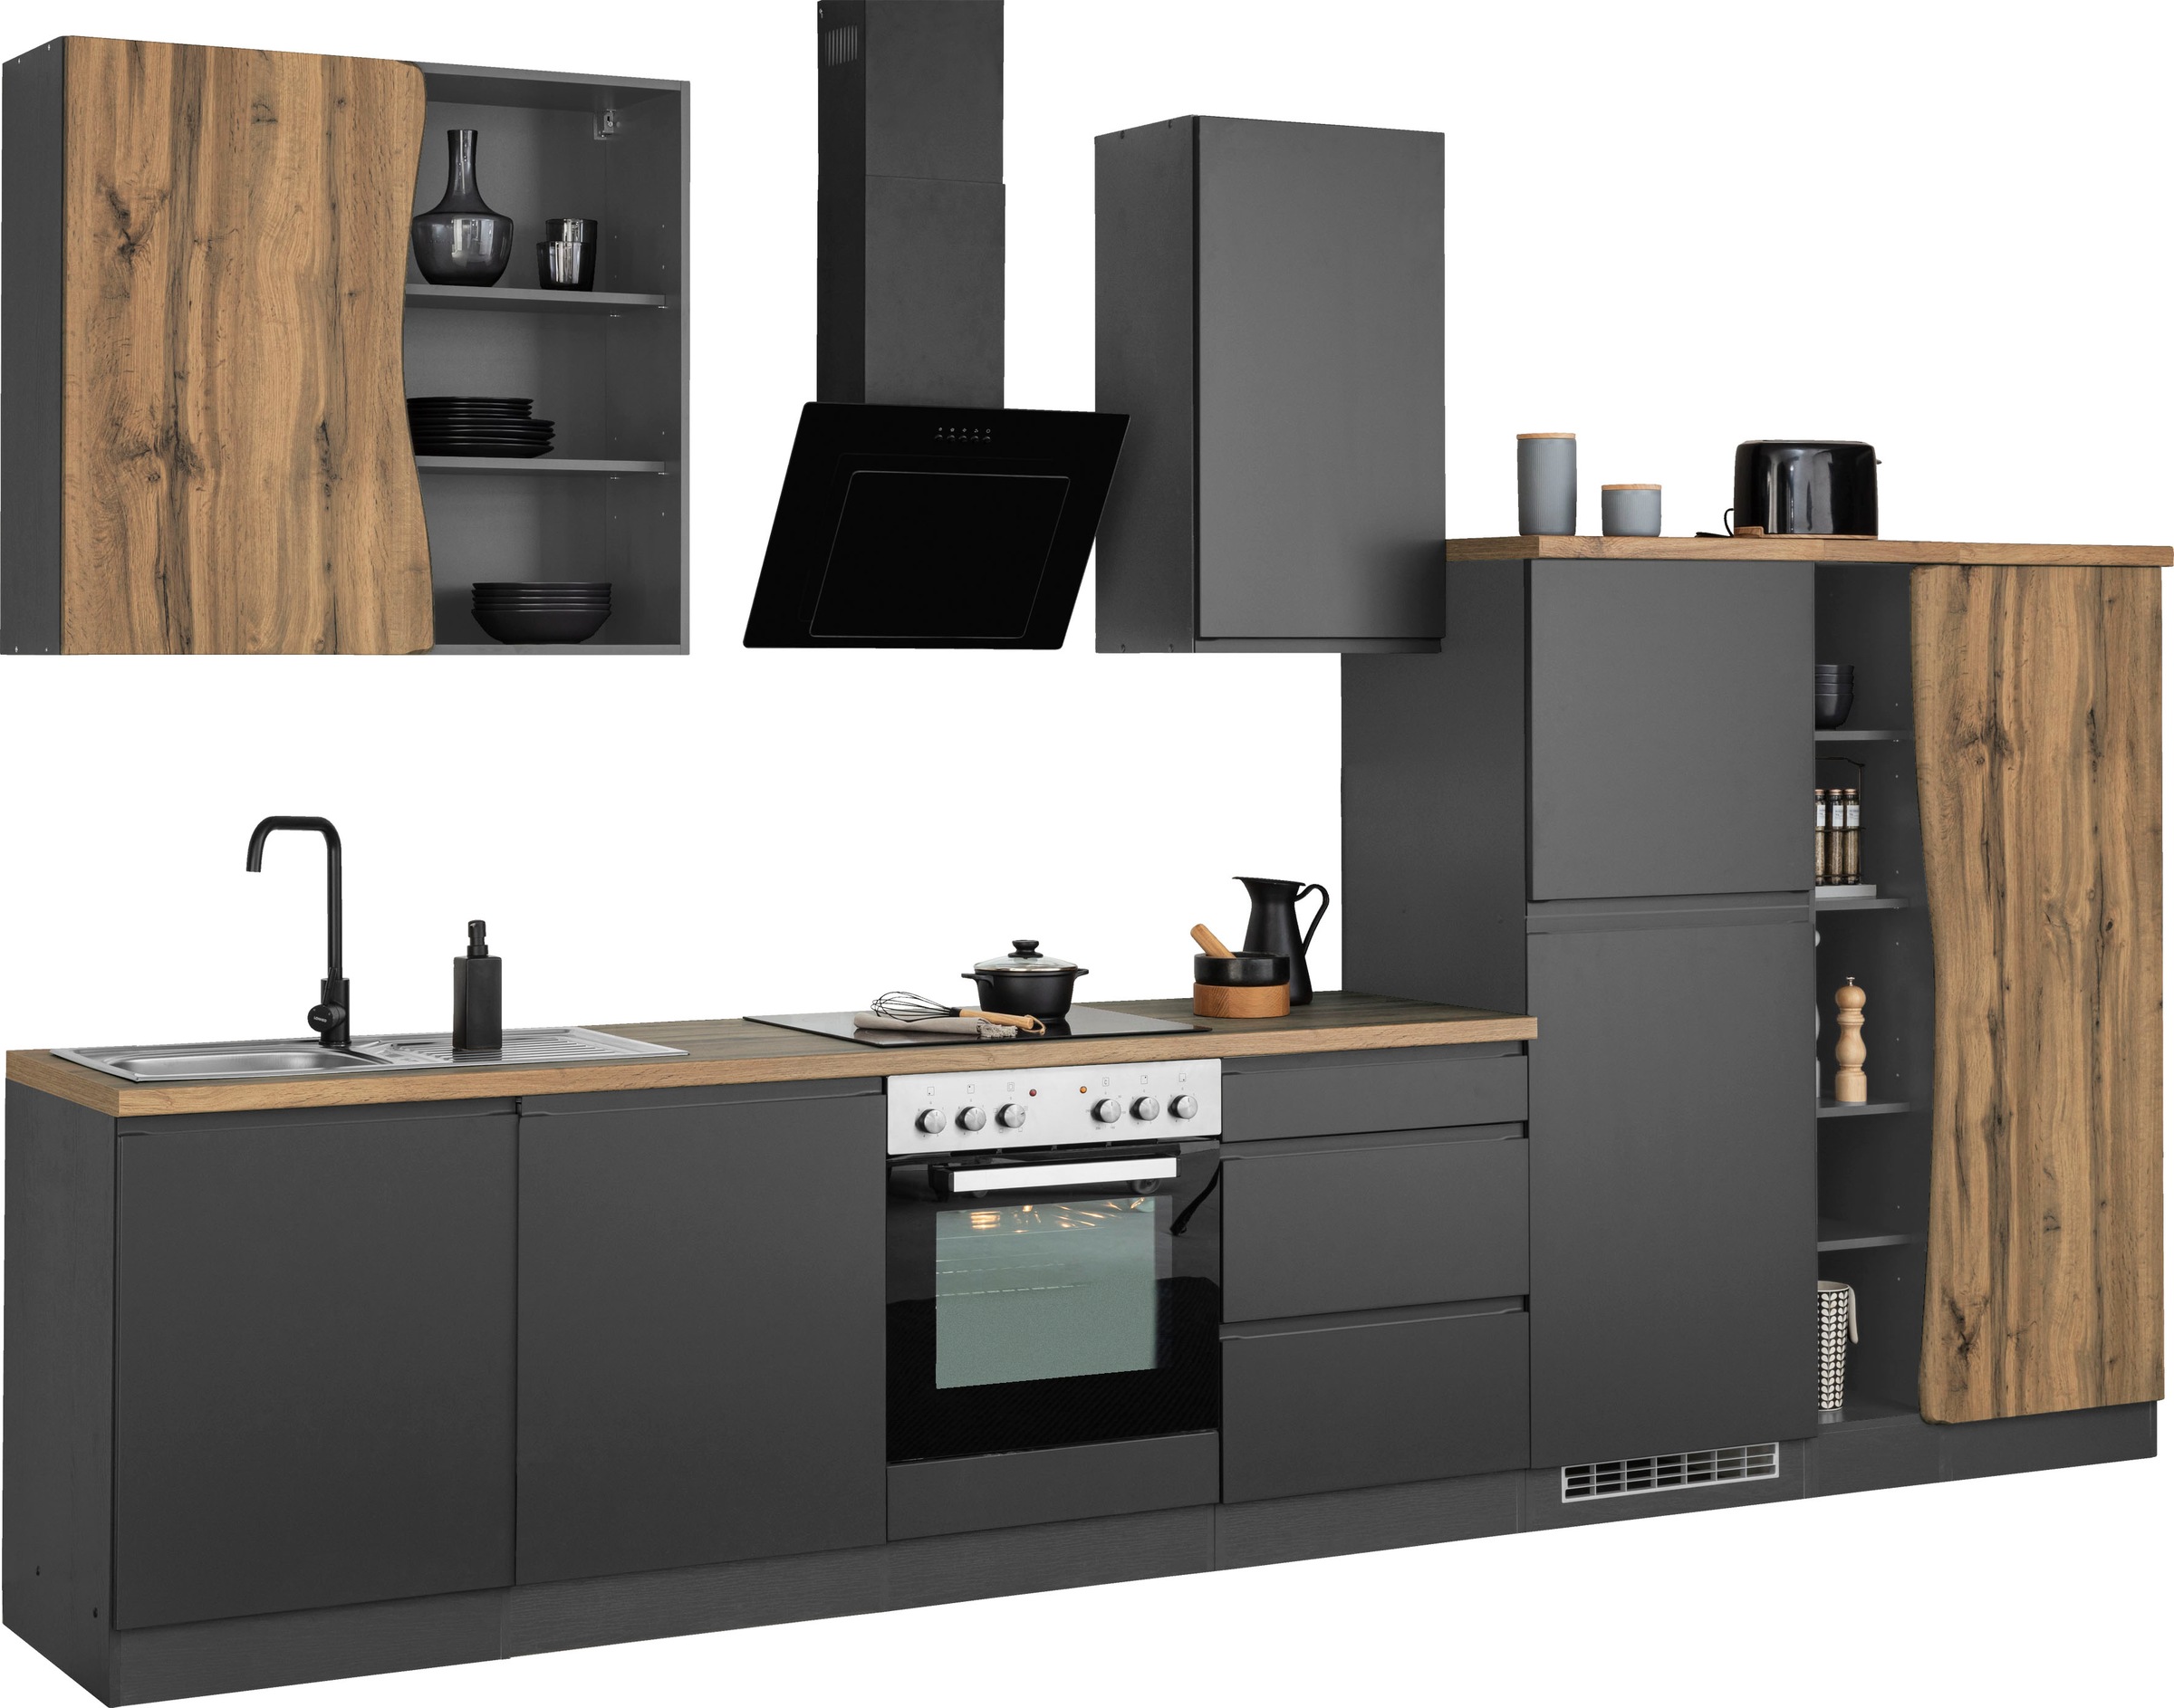 HELD MÖBEL Küche »Bruneck«, 380cm breit, wahlweise mit oder ohne E-Geräte,  hochwertige MDF-Fronten kaufen bei OTTO